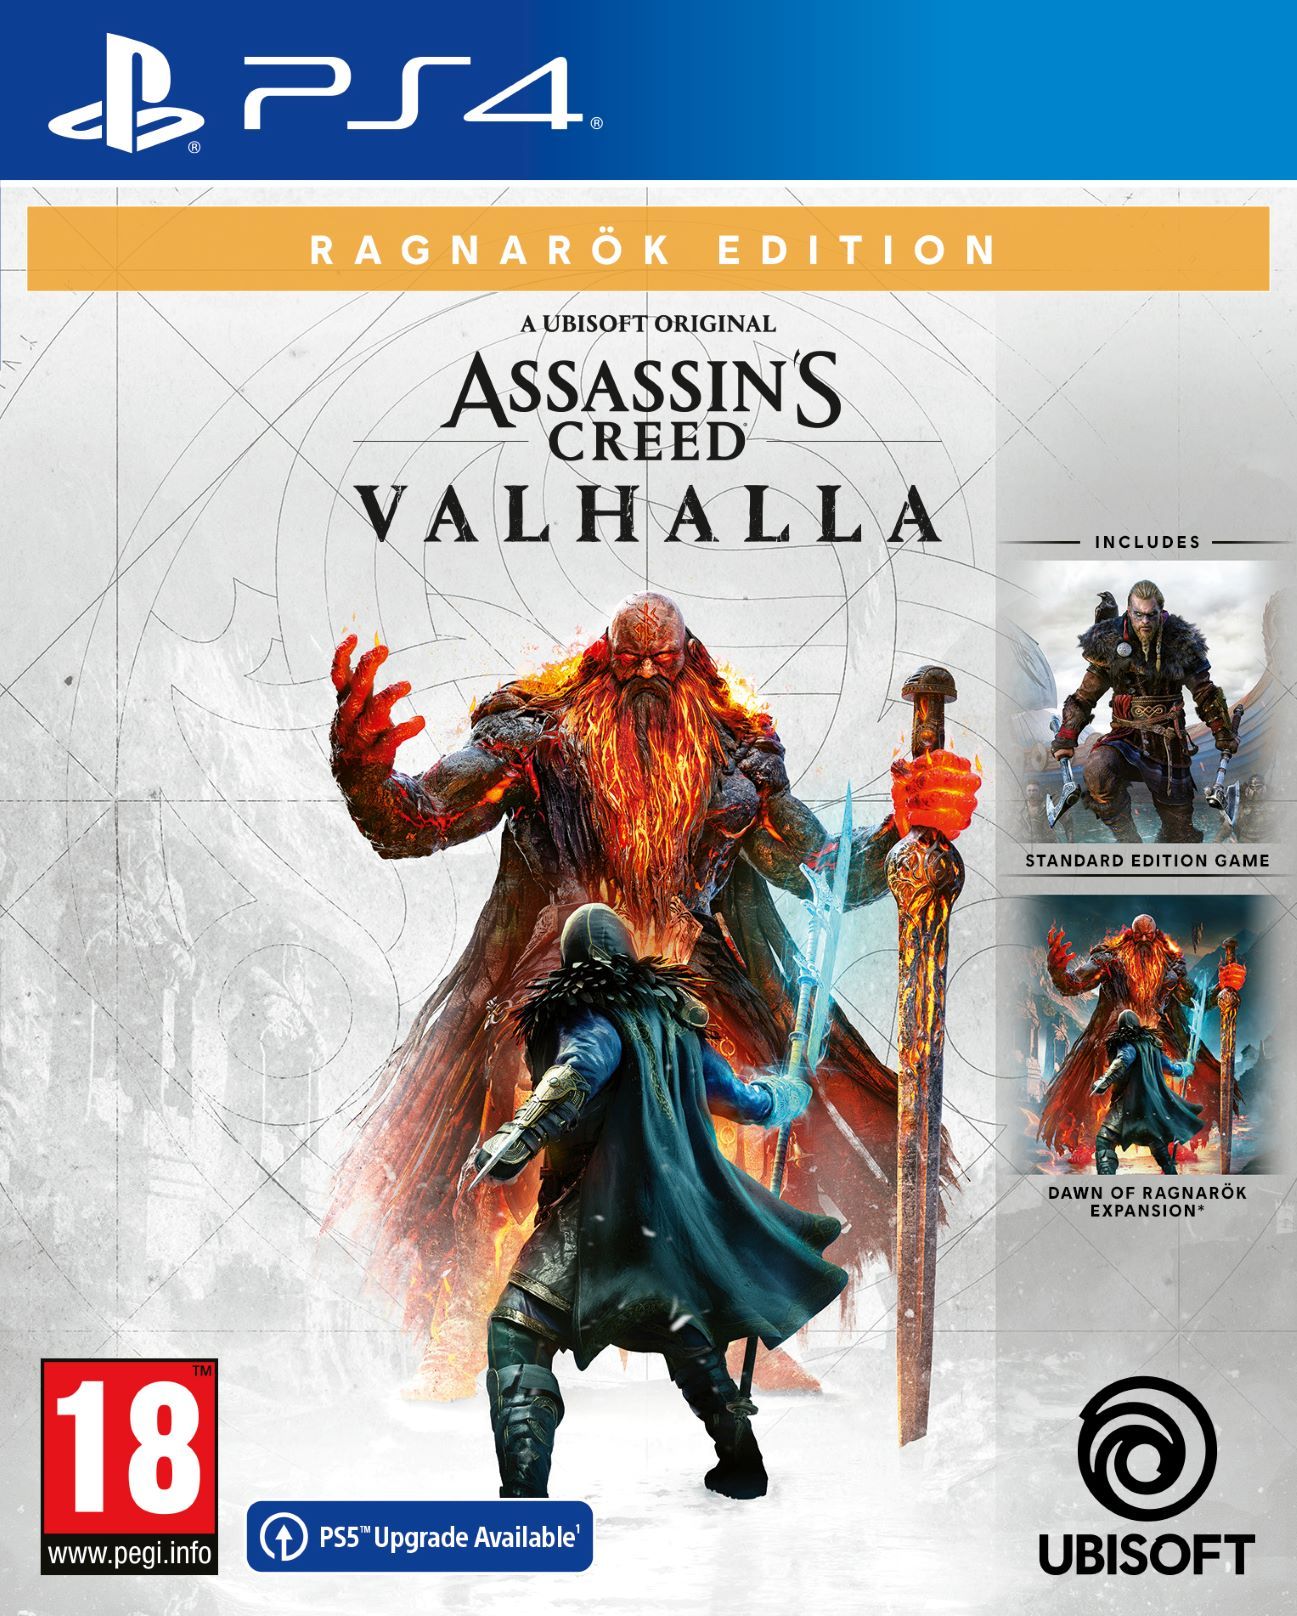 Assassins creed valhalla ragnarok edition - ps4